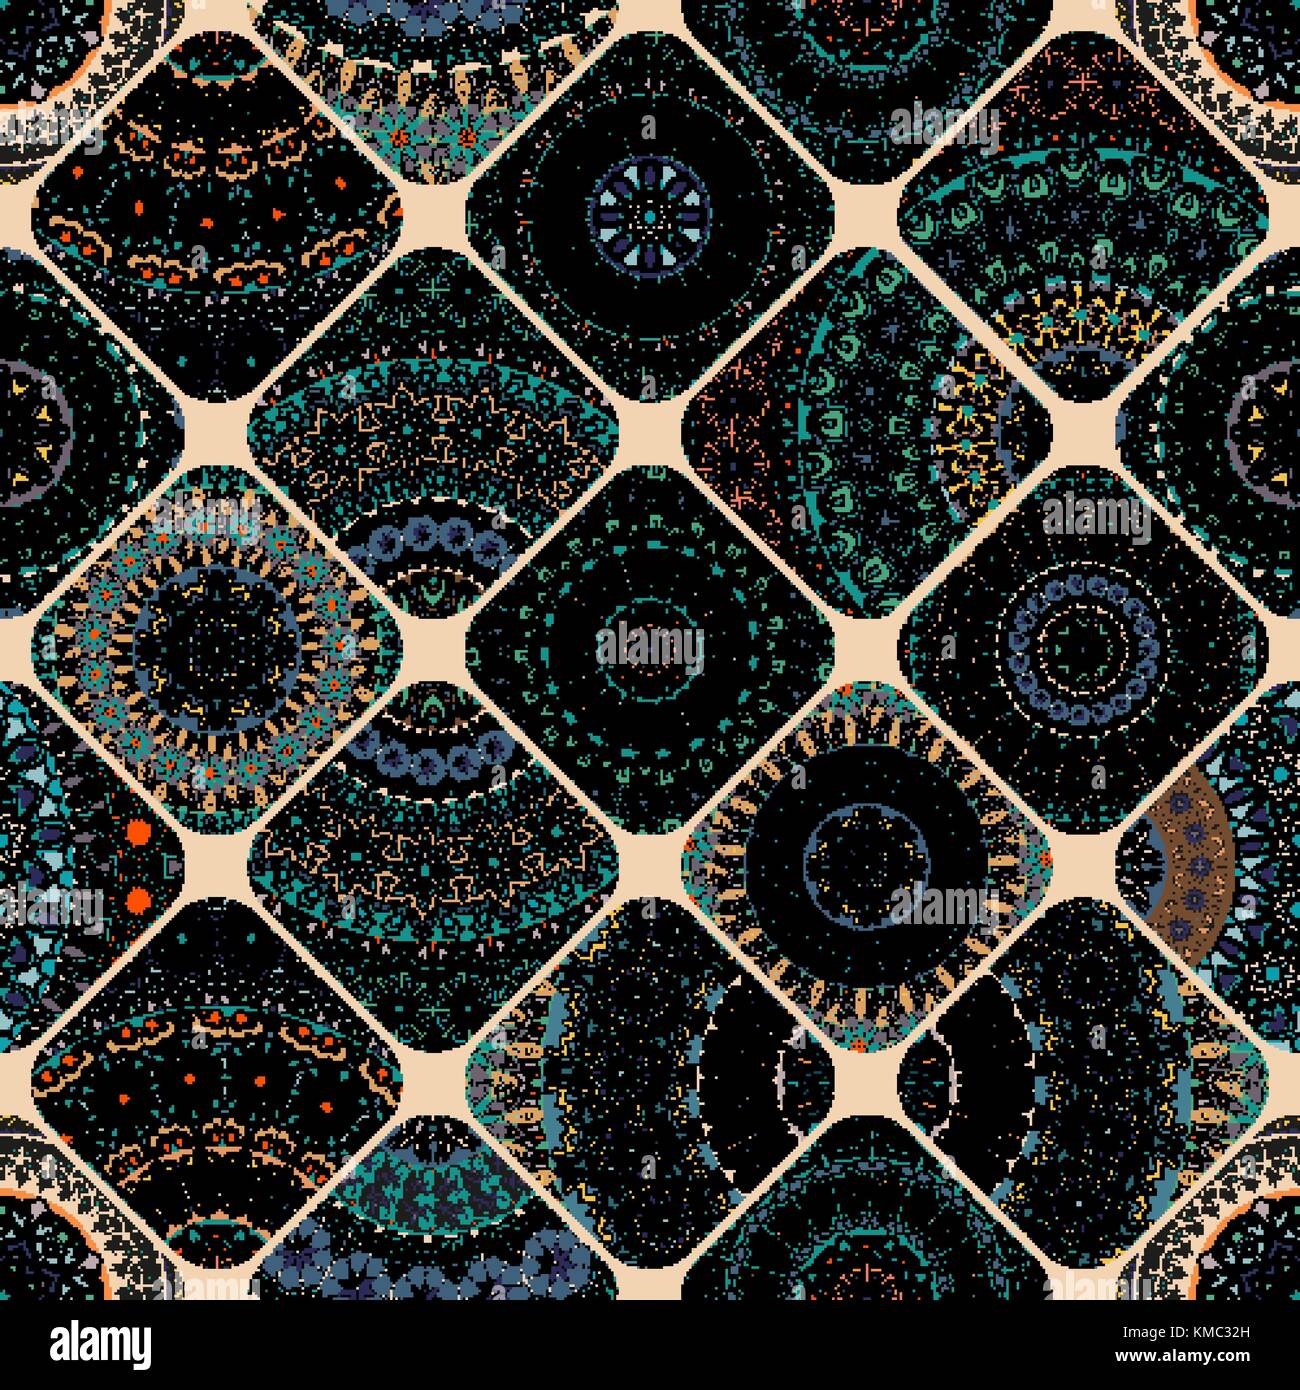 Bunte vintage nahtlose Muster mit floralen und Mandala Elemente. Hand gezeichnet Hintergrund. Kann für Textilien, Tapeten, Fliesen, Verpackung benutzt werden, umfasst ein Stock Vektor